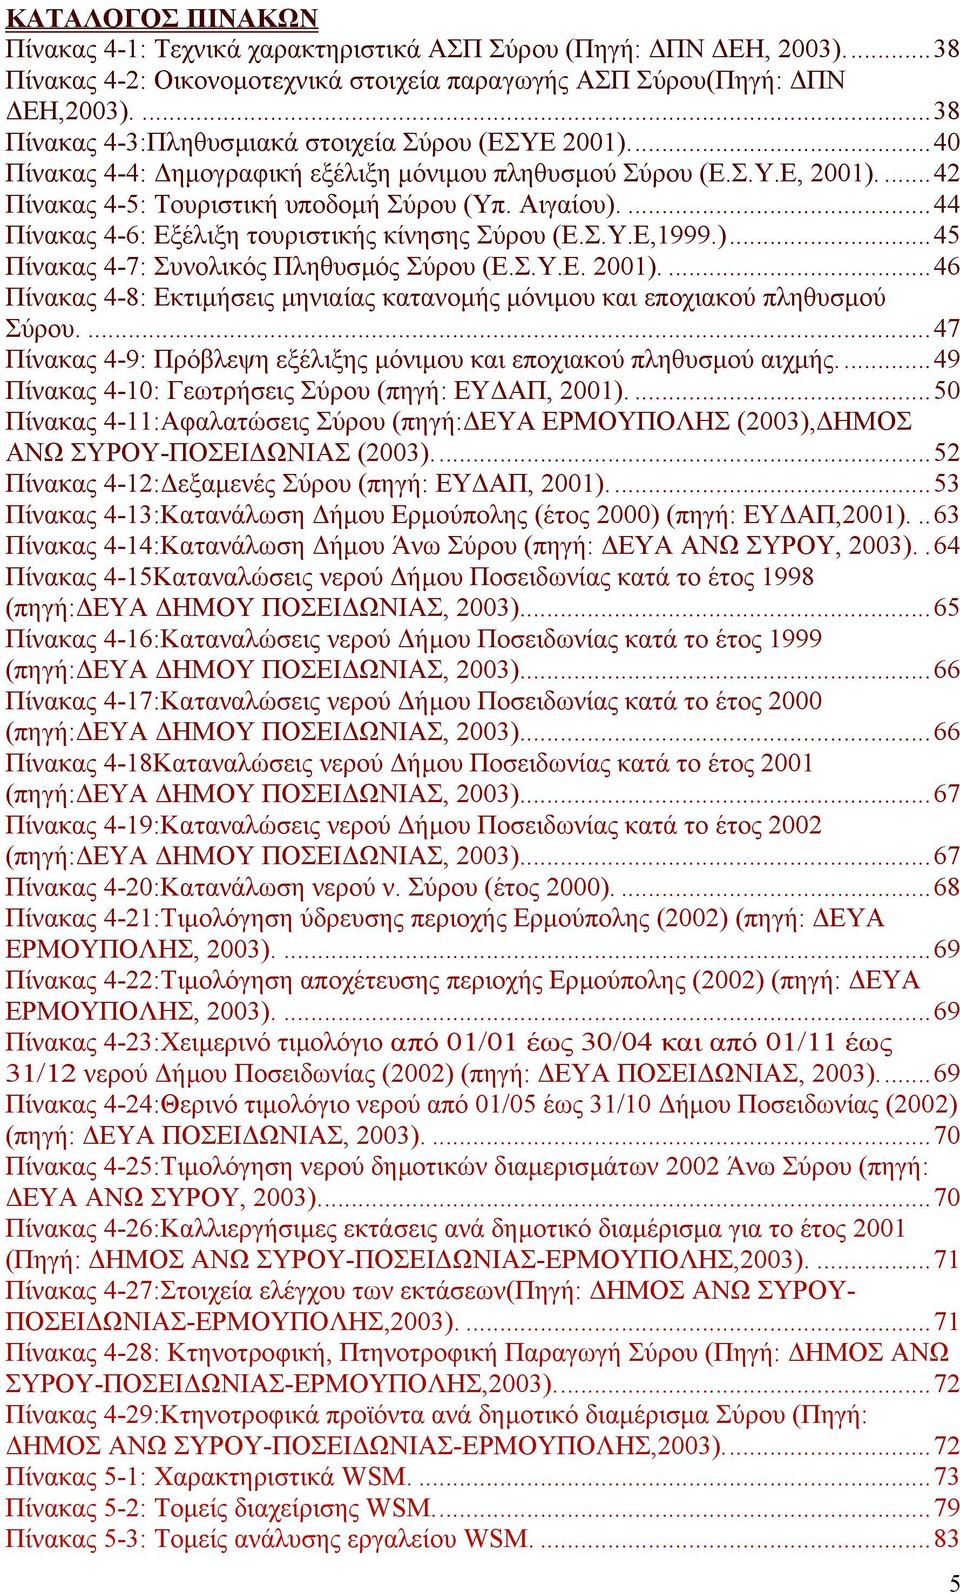 ...44 Πίνακας 4-6: Εξέλιξη τουριστικής κίνησης Σύρου (Ε.Σ.Υ.Ε,1999.)...45 Πίνακας 4-7: Συνολικός Πληθυσµός Σύρου (Ε.Σ.Υ.Ε. 2001).